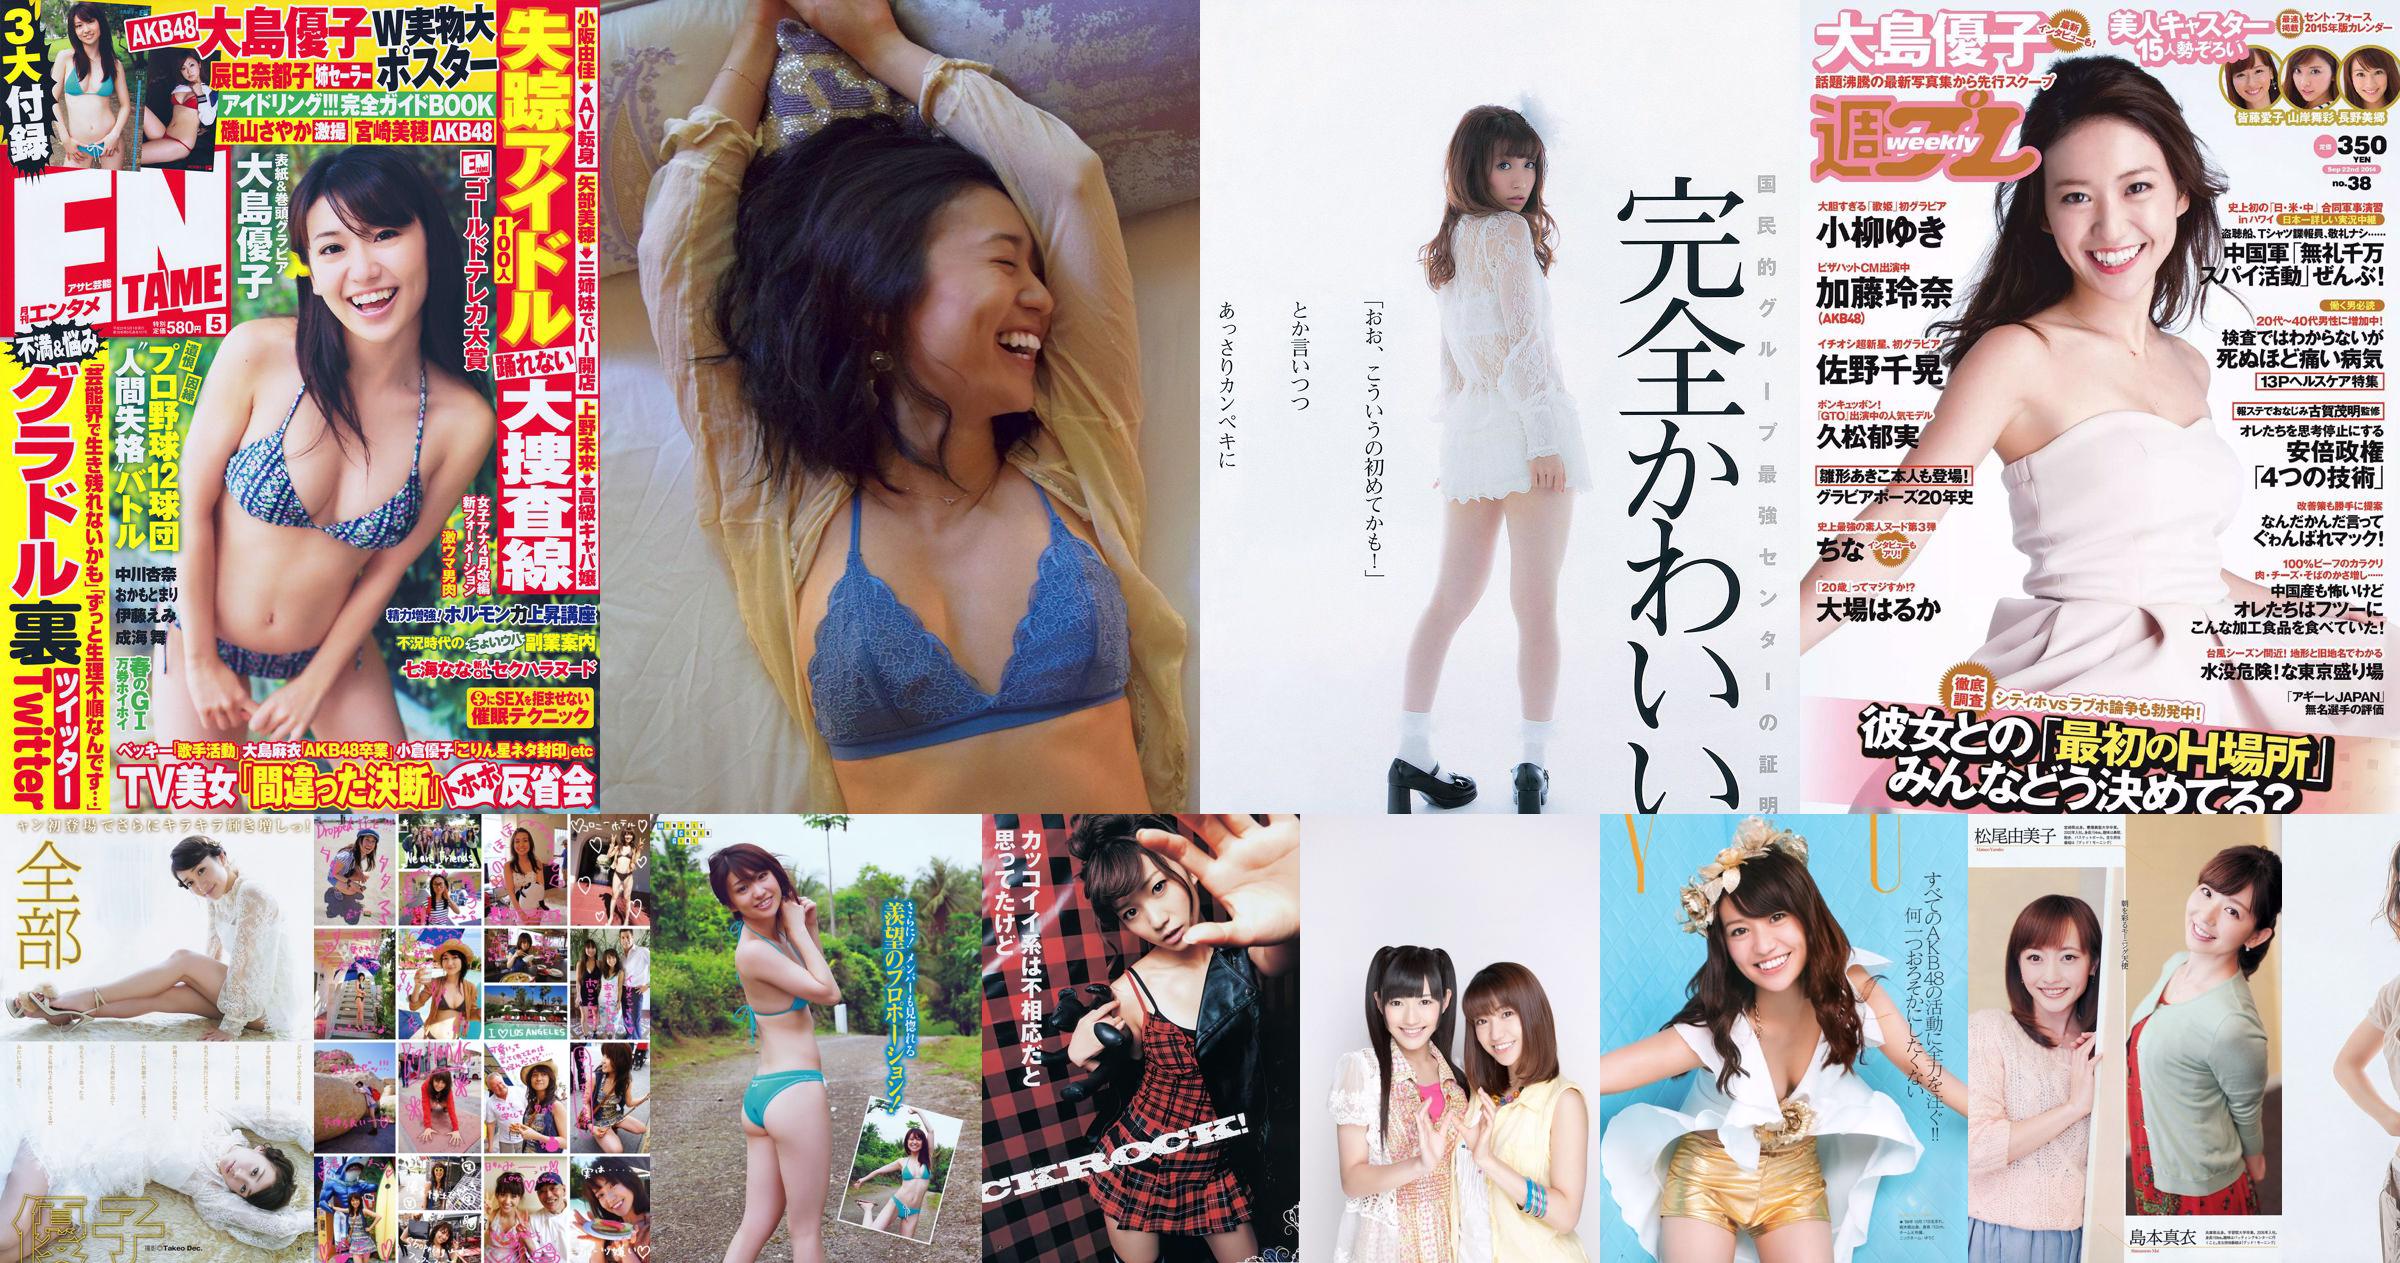 Yuko Oshima Aimi Shinohara Mana Okada Watarirouka Hashiri 7 Yoko Kumada Nozomi Sasaki [Tygodniowy Playboy] 2011 No.50 Photo No.8a2a56 Strona 1